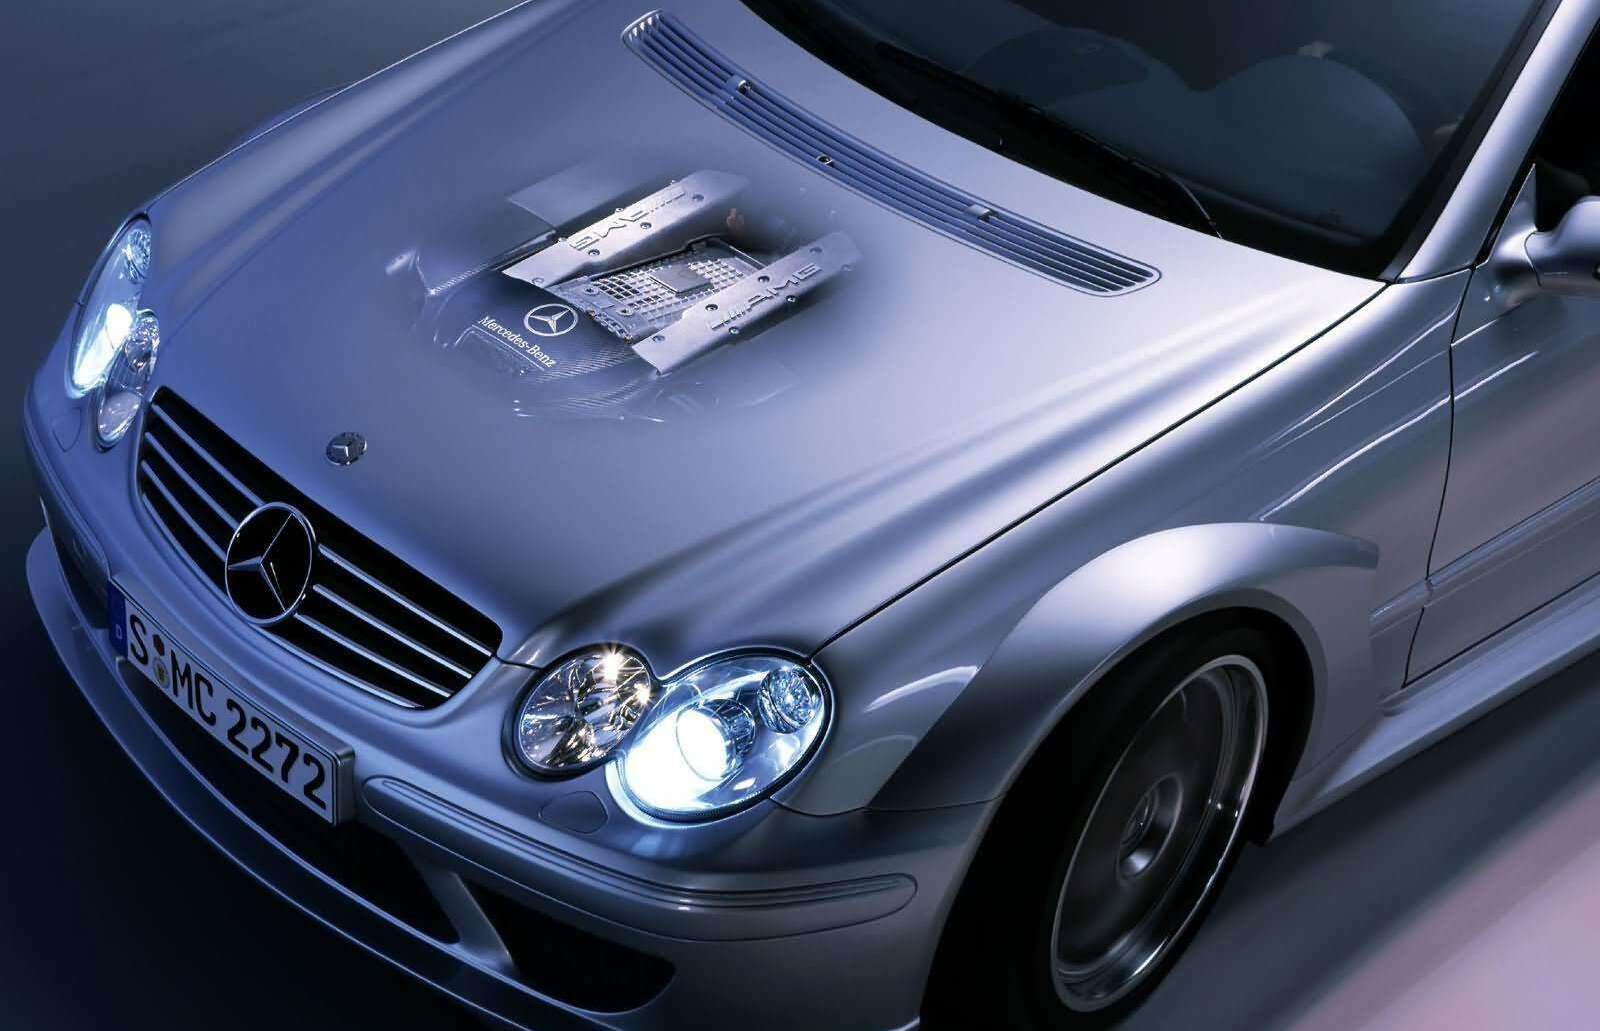 Mercedes Benz Clk Dtm Amg 2004 1600 0f (1)